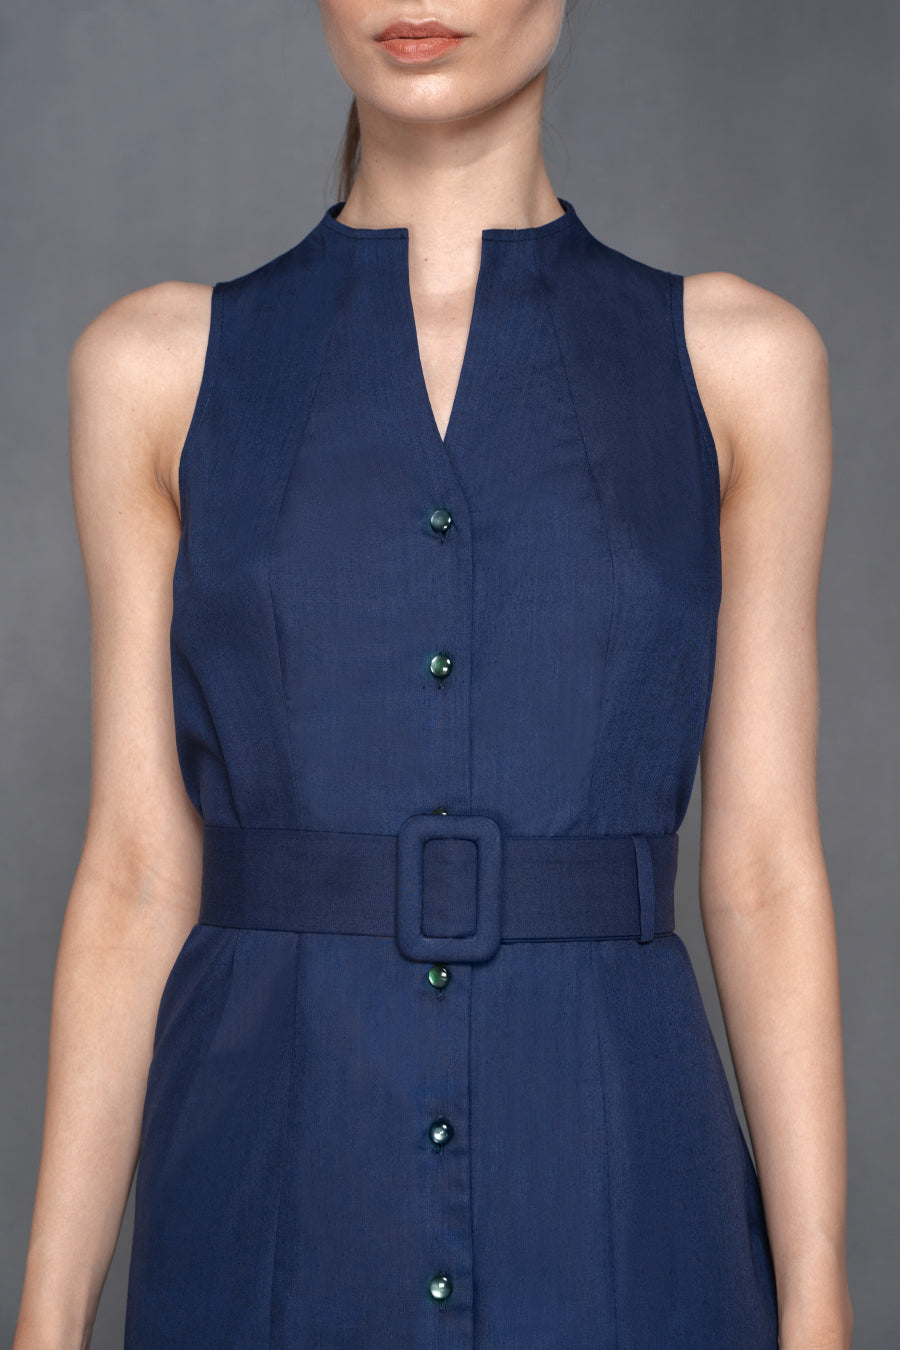 Jenner - Non Iron - Navy blue button down sleevless shirt dress